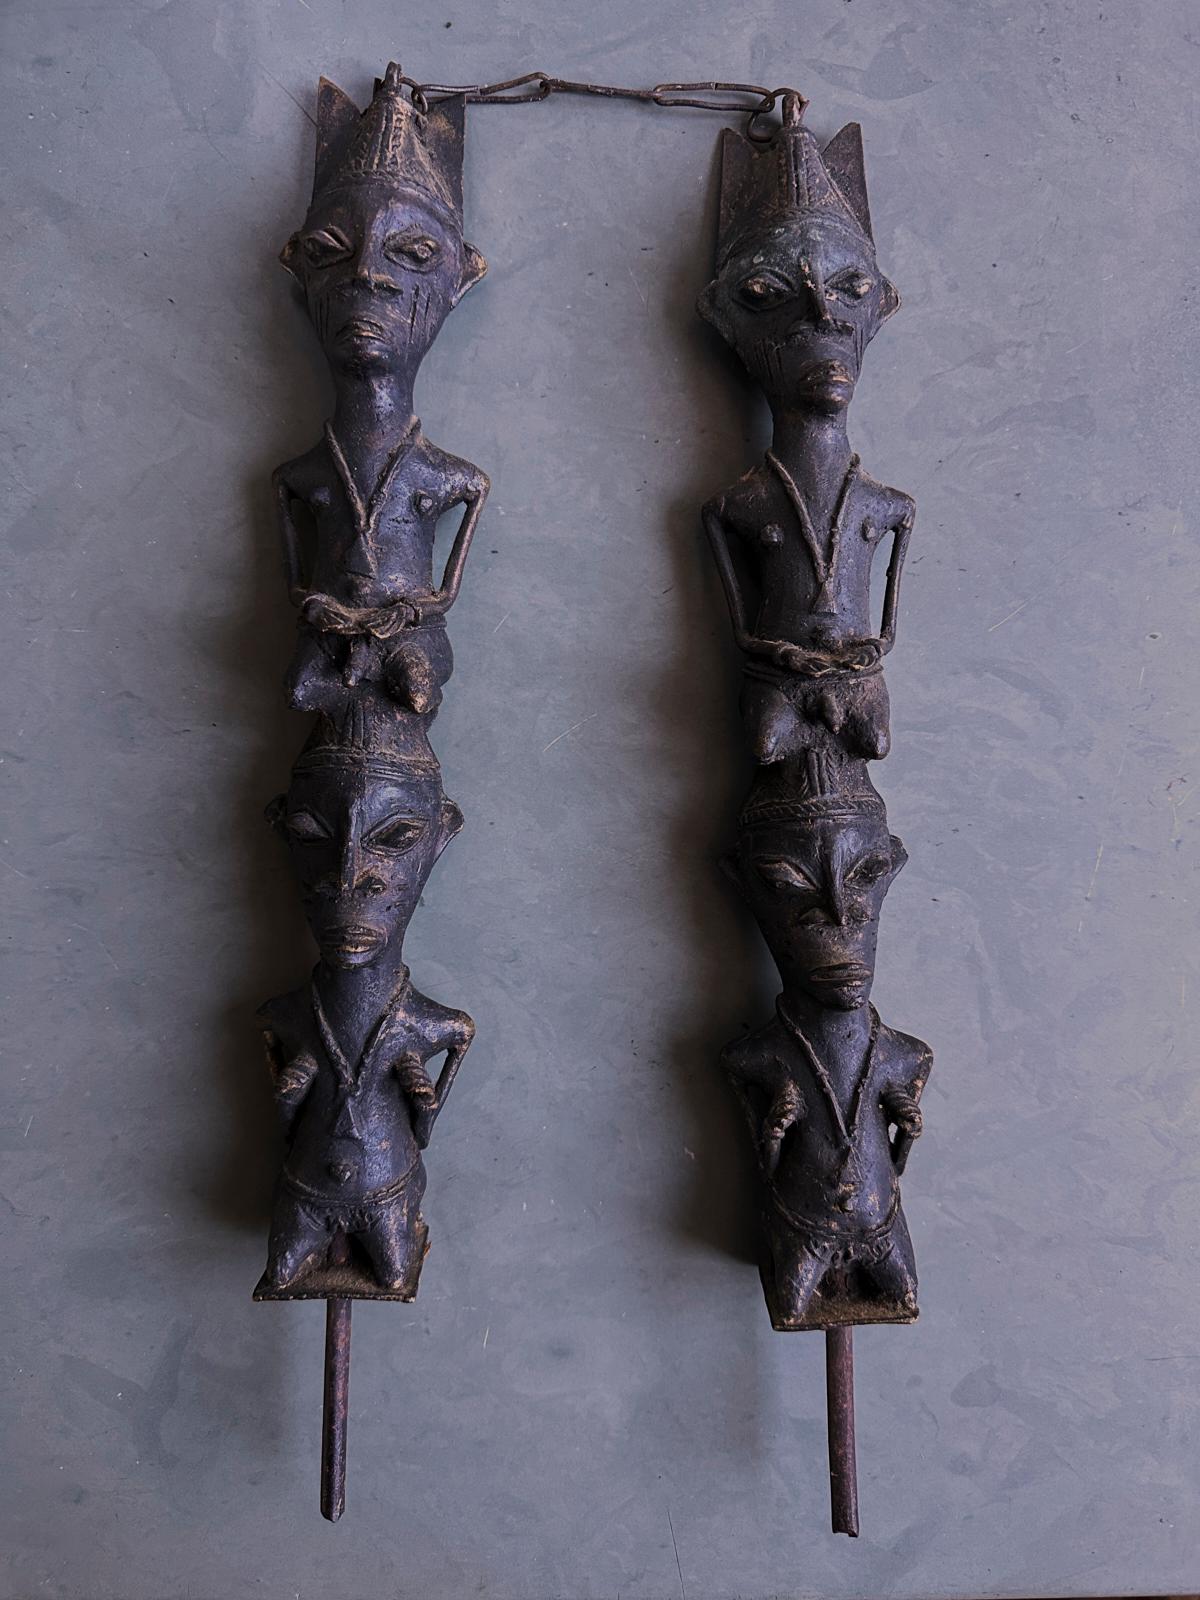 Paire de bâtons en bronze et en fer de la société Ogboni du peuple Yoruba, Nigeria, début du 20e siècle.
Chez les Yoruba, au sud-ouest du Nigeria, il existait et existe toujours la société secrète Ogboni, qui exerce une influence sur la vie sociale